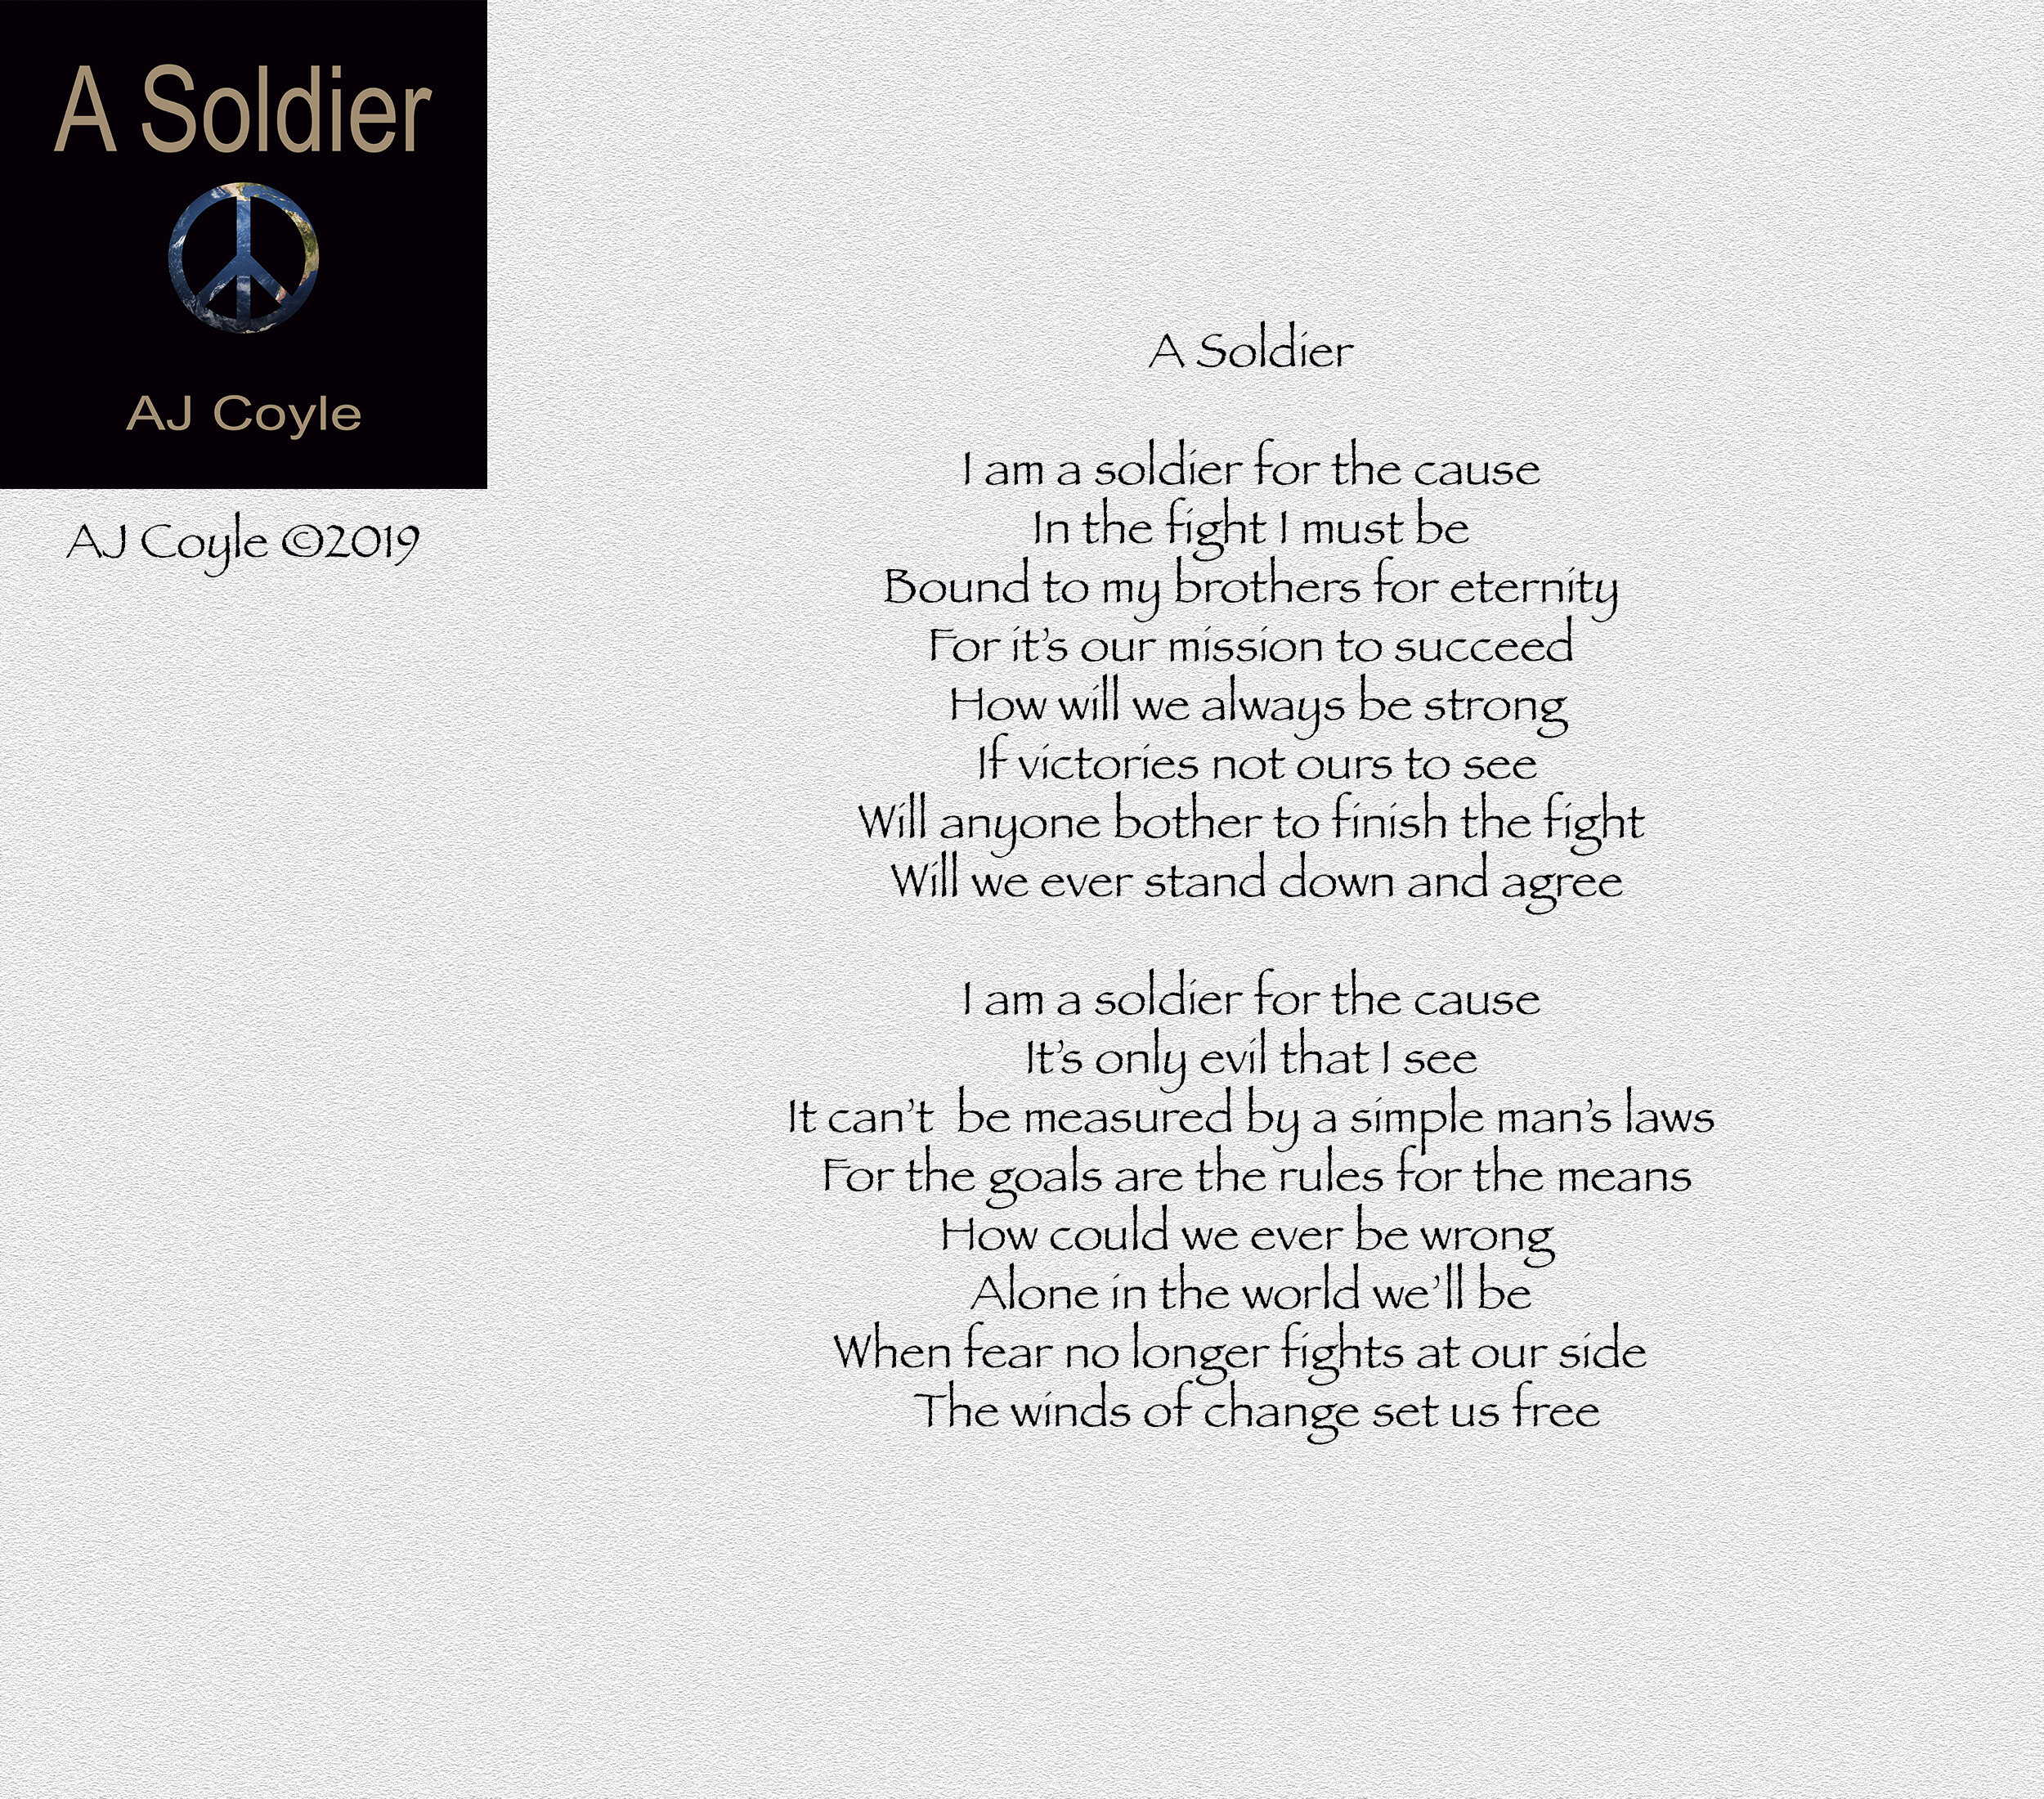 A Soldier - AJ Coyle